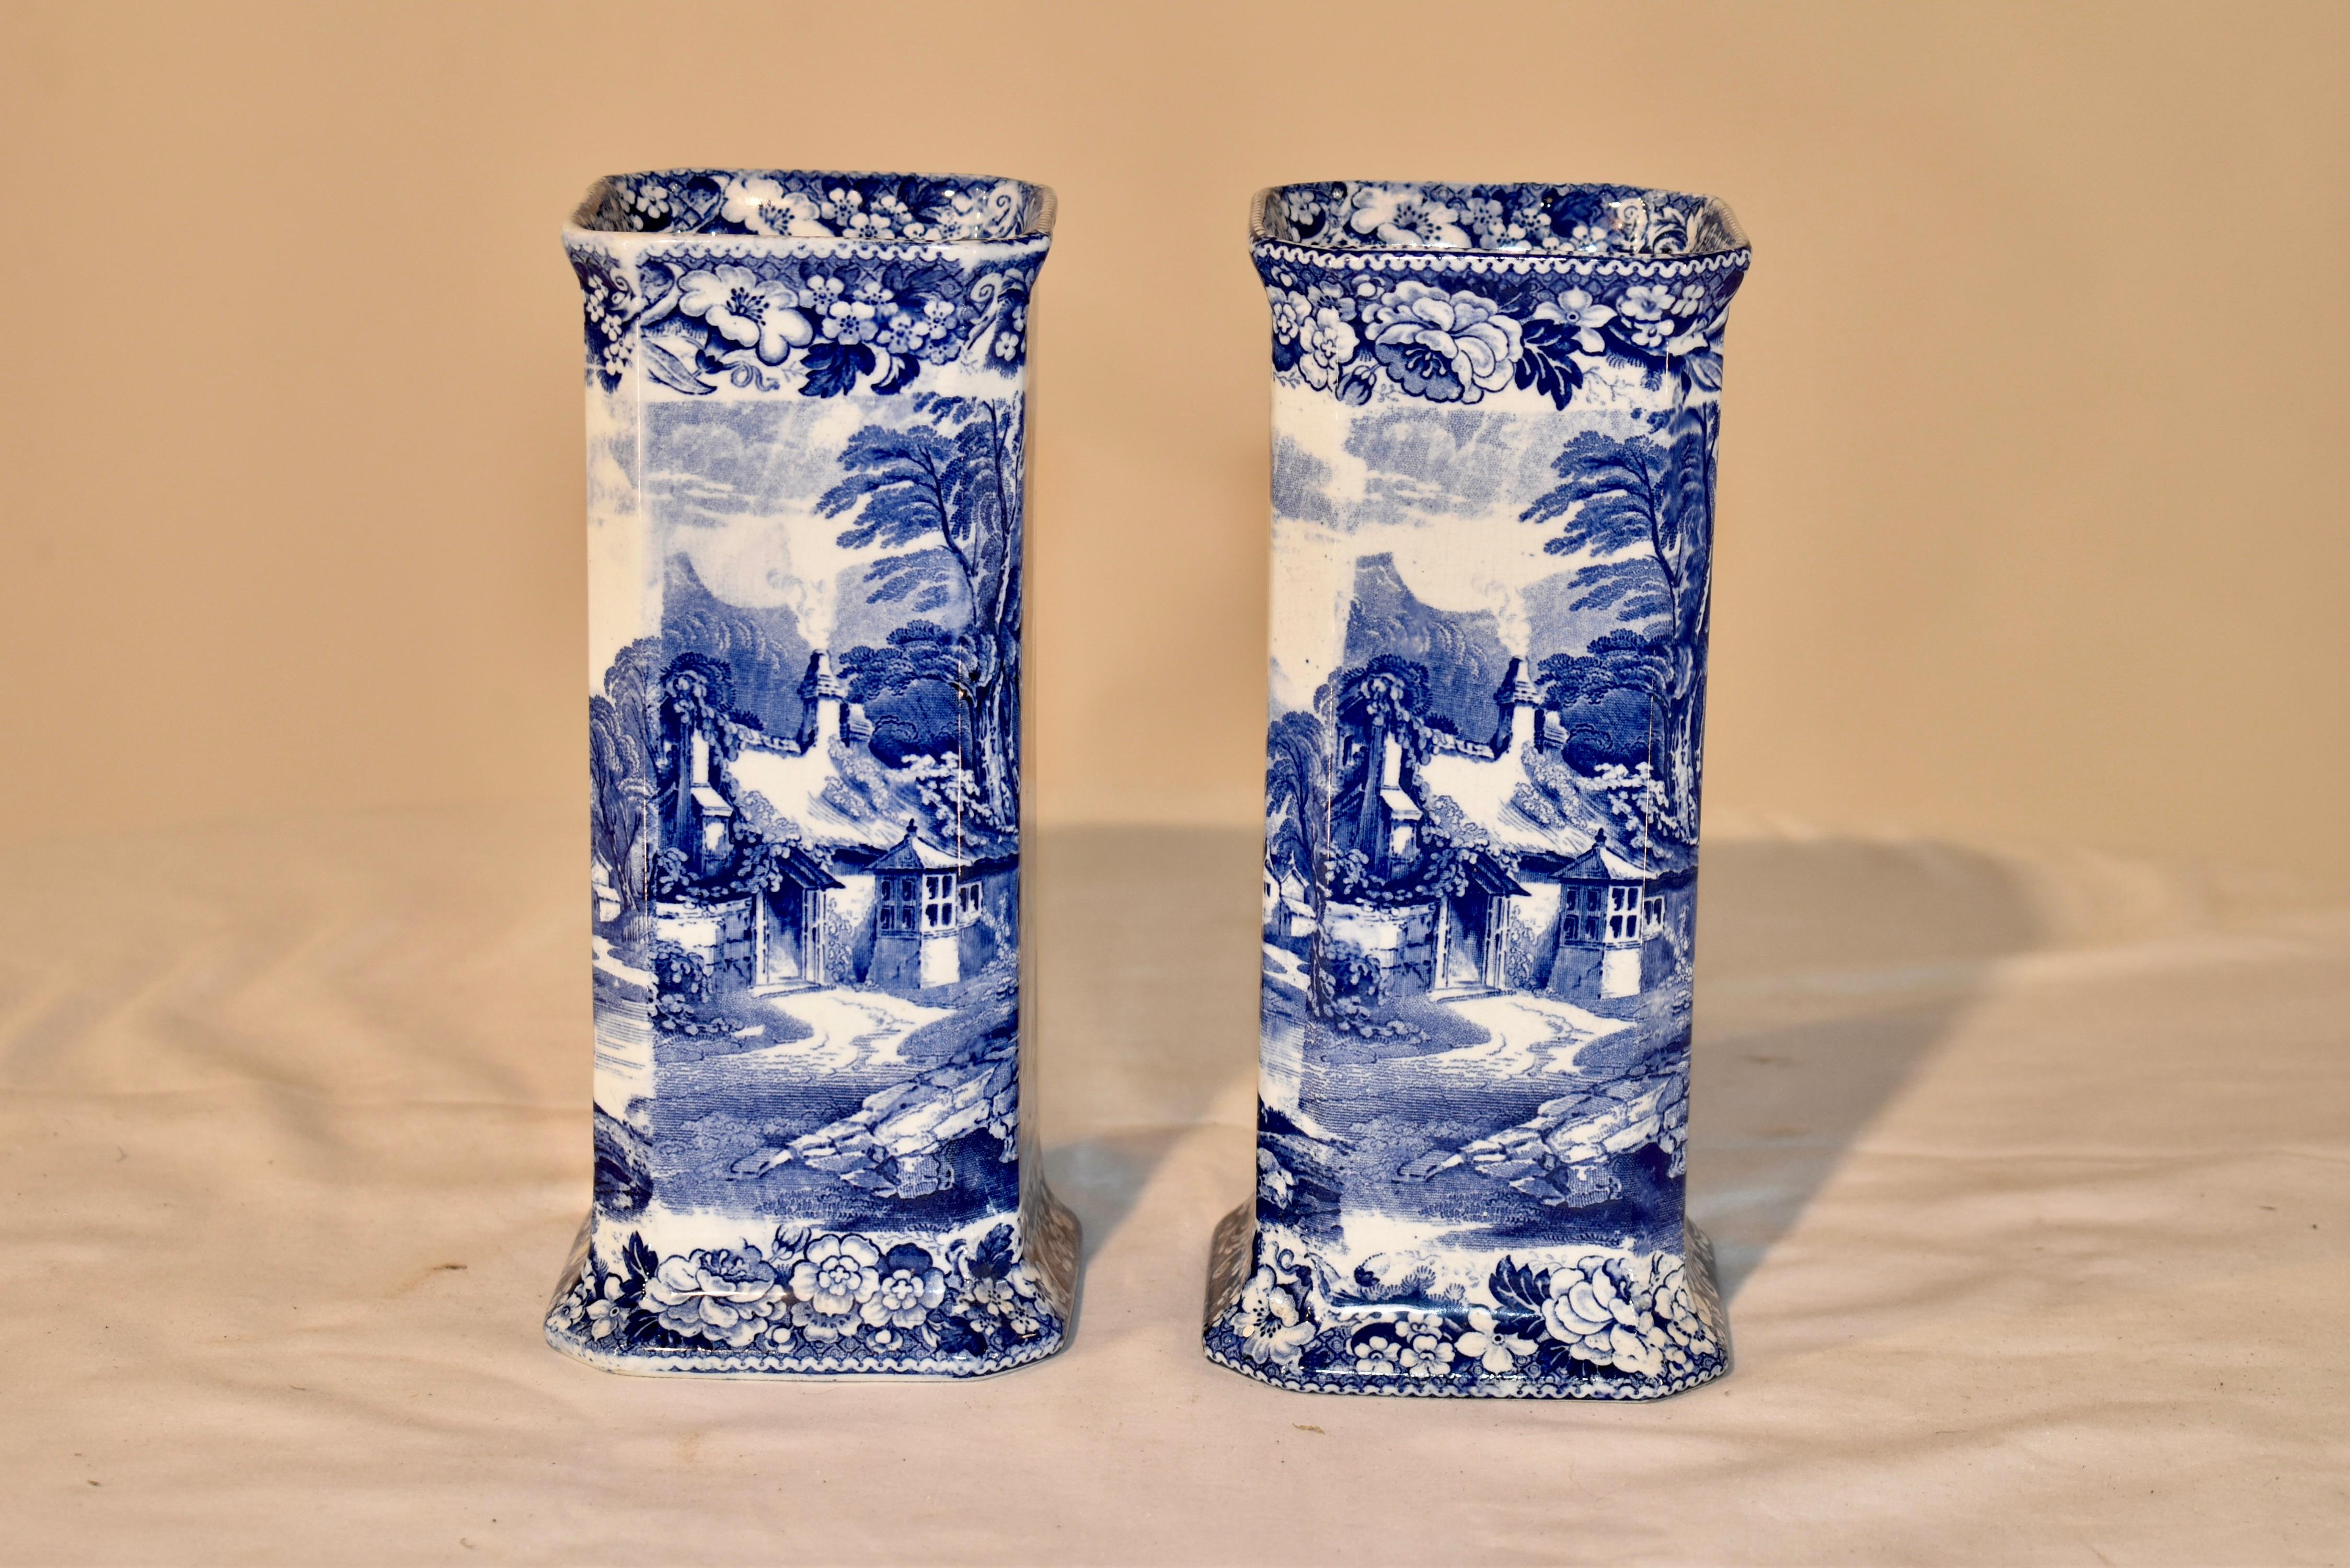 Ein Paar blau-weiße Vasen aus dem 19. Jahrhundert, auf den Sockeln signiert Pratt's Lake Scenery. Es handelt sich um hübsche und ungewöhnliche quadratische Vasen mit wunderschönem Dekor aus Transferware, das eine Hütte mit Blick auf einen See und